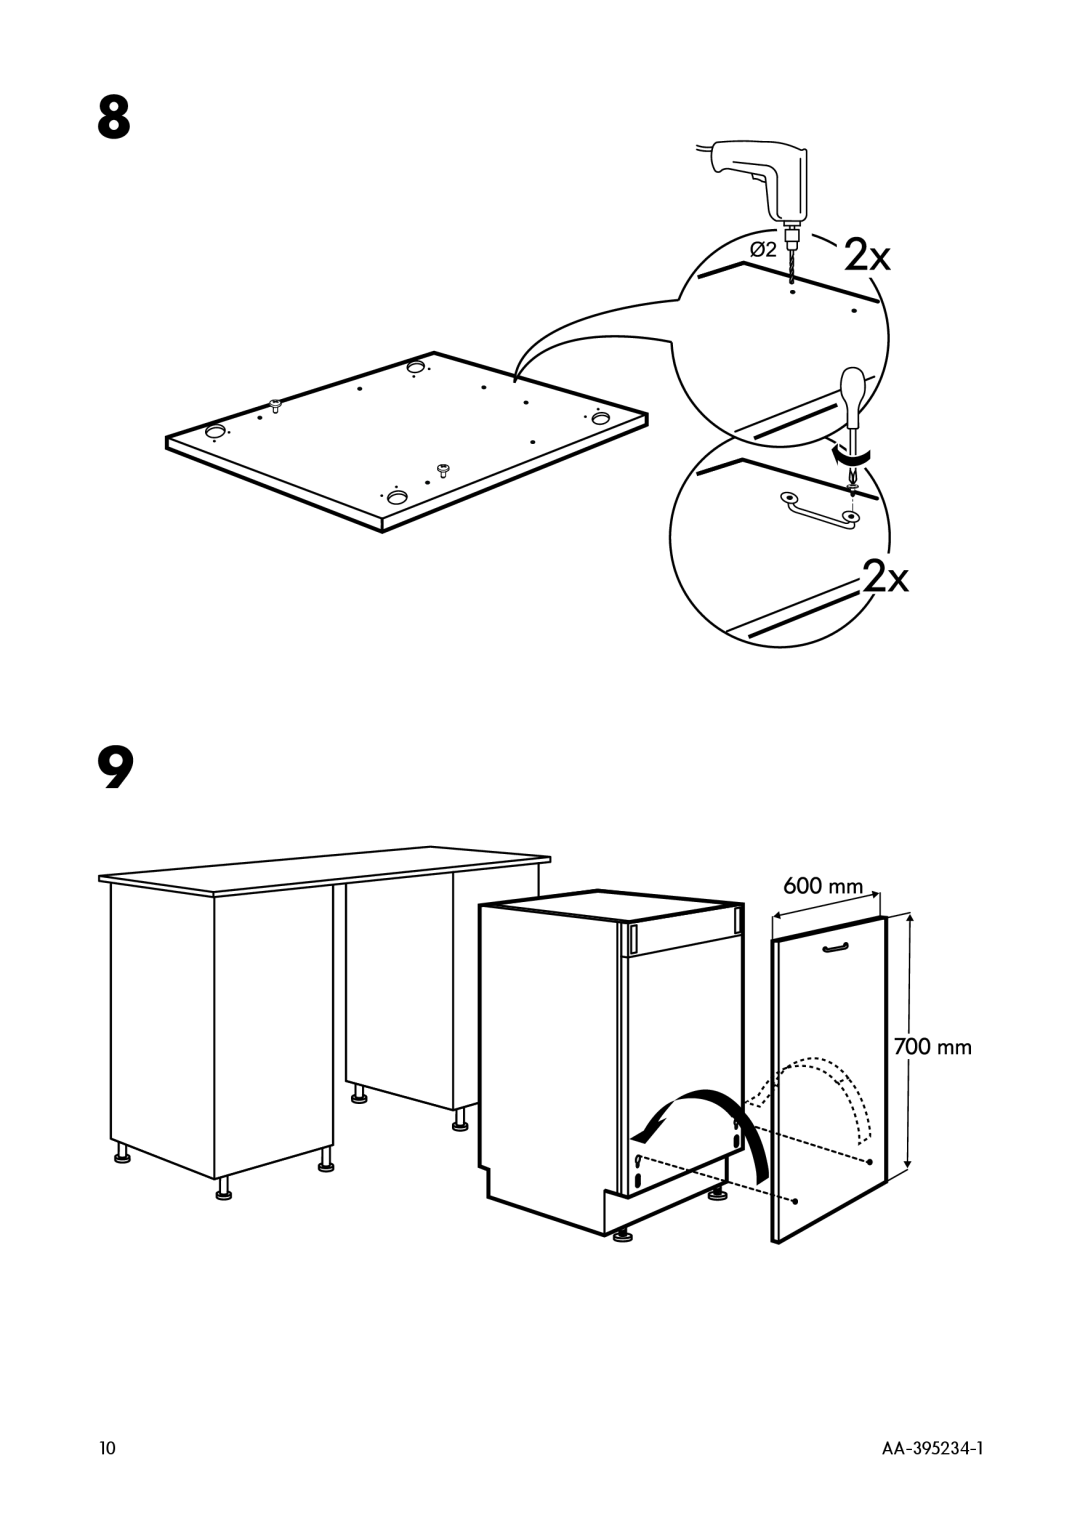 IKEA DW60 manual AA-395234-1 